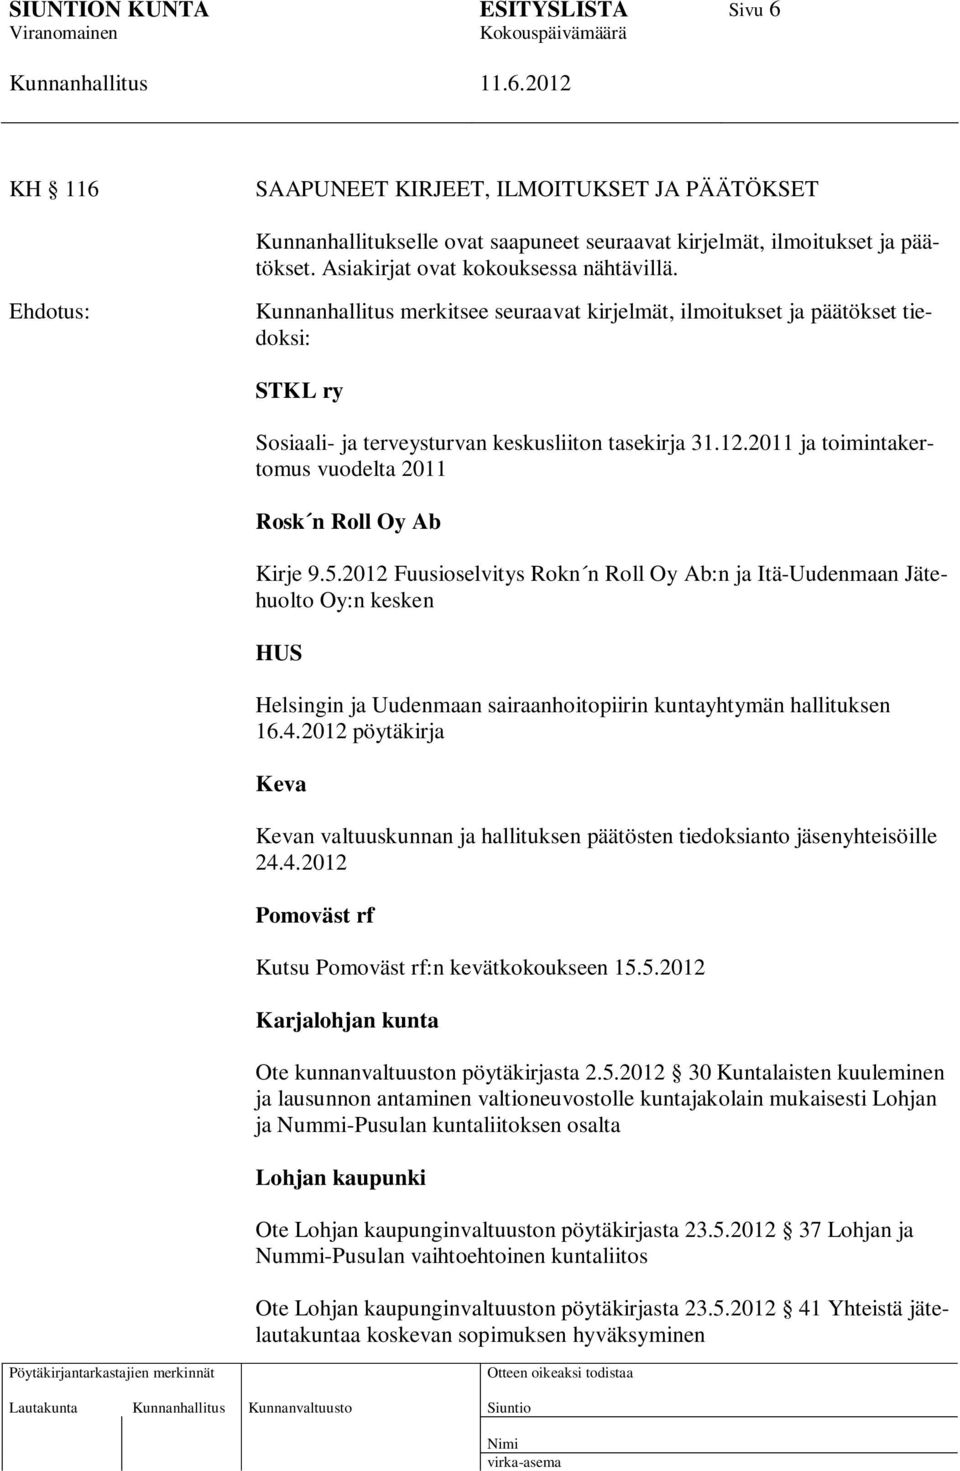 2012 Fuusioselvitys Rokn n Roll Oy Ab:n ja Itä-Uudenmaan Jätehuolto Oy:n kesken HUS Helsingin ja Uudenmaan sairaanhoitopiirin kuntayhtymän hallituksen 16.4.